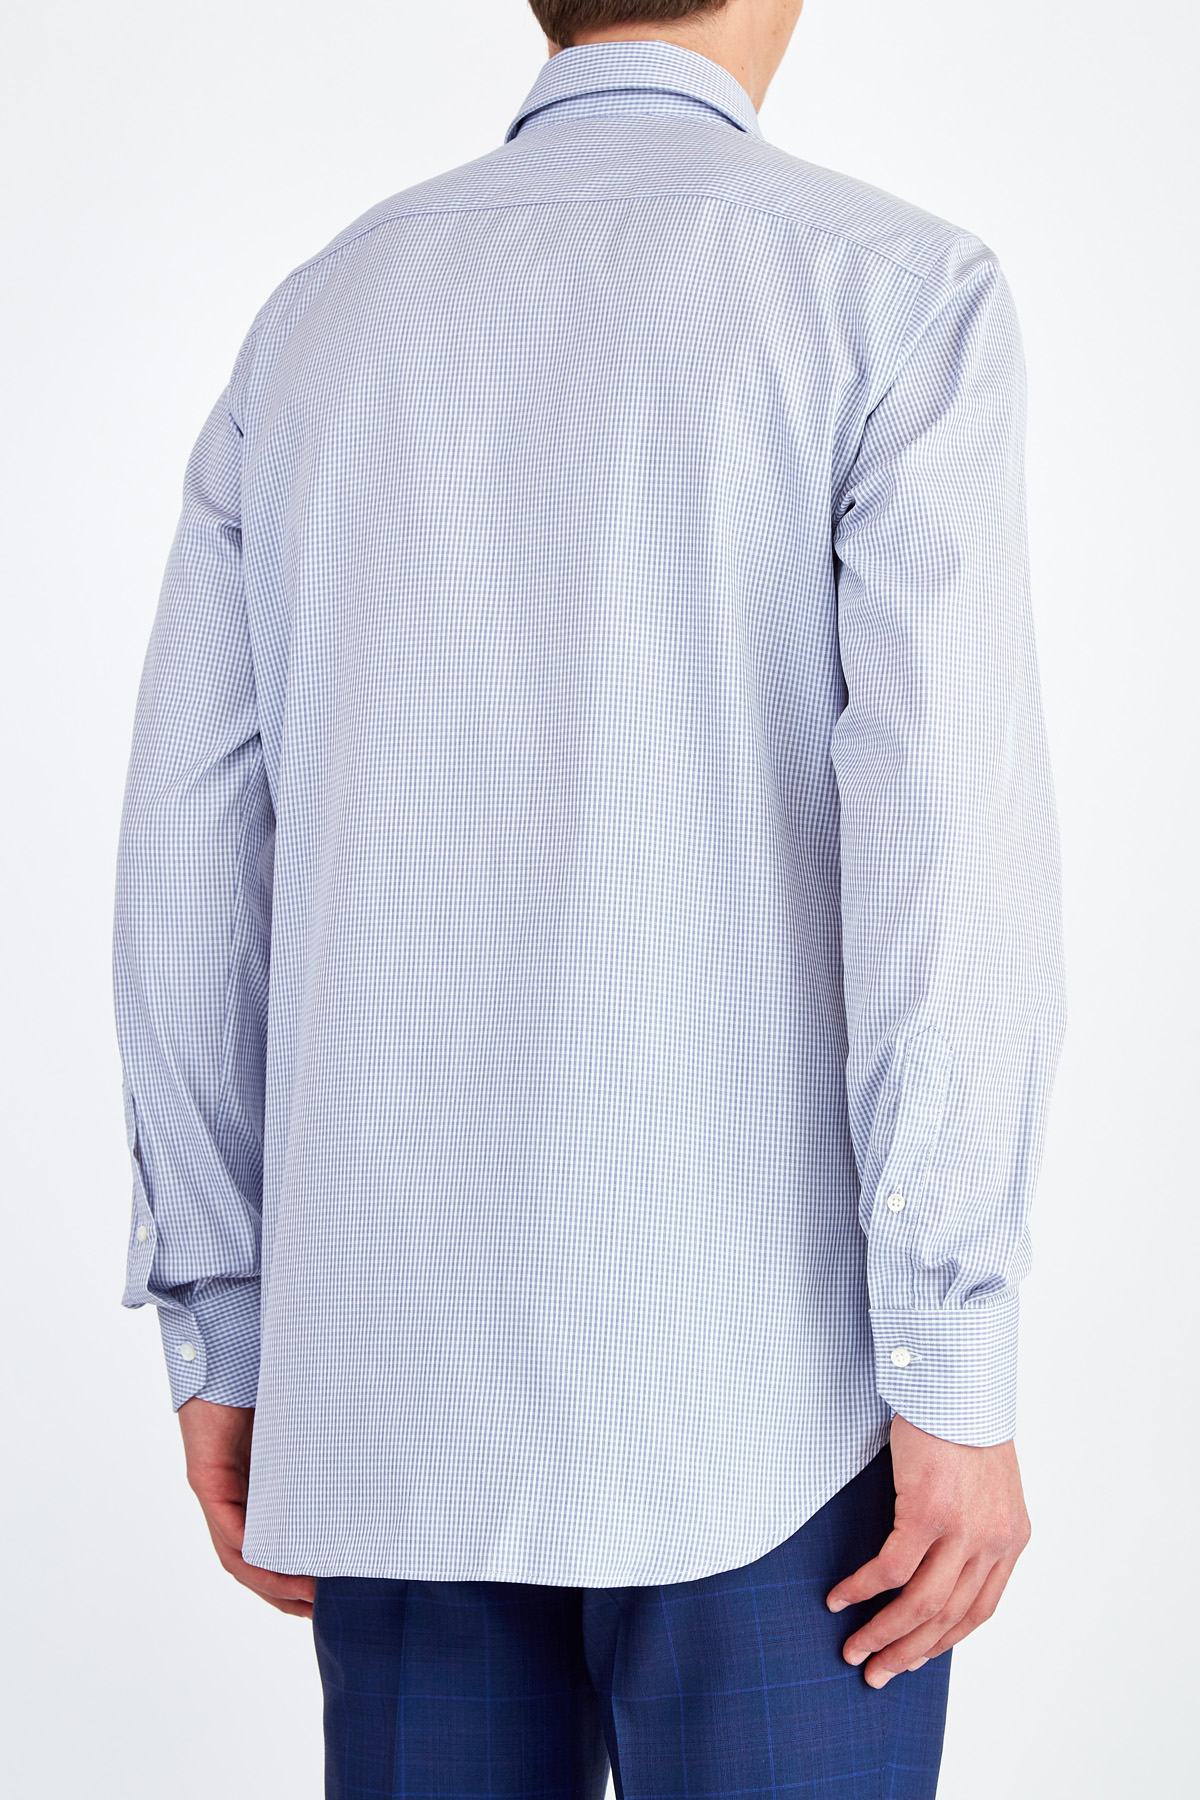 Классическая рубашка из хлопка Impeccabile с тканым микро-принтом CANALI, цвет голубой, размер 48;50;52;58 - фото 4